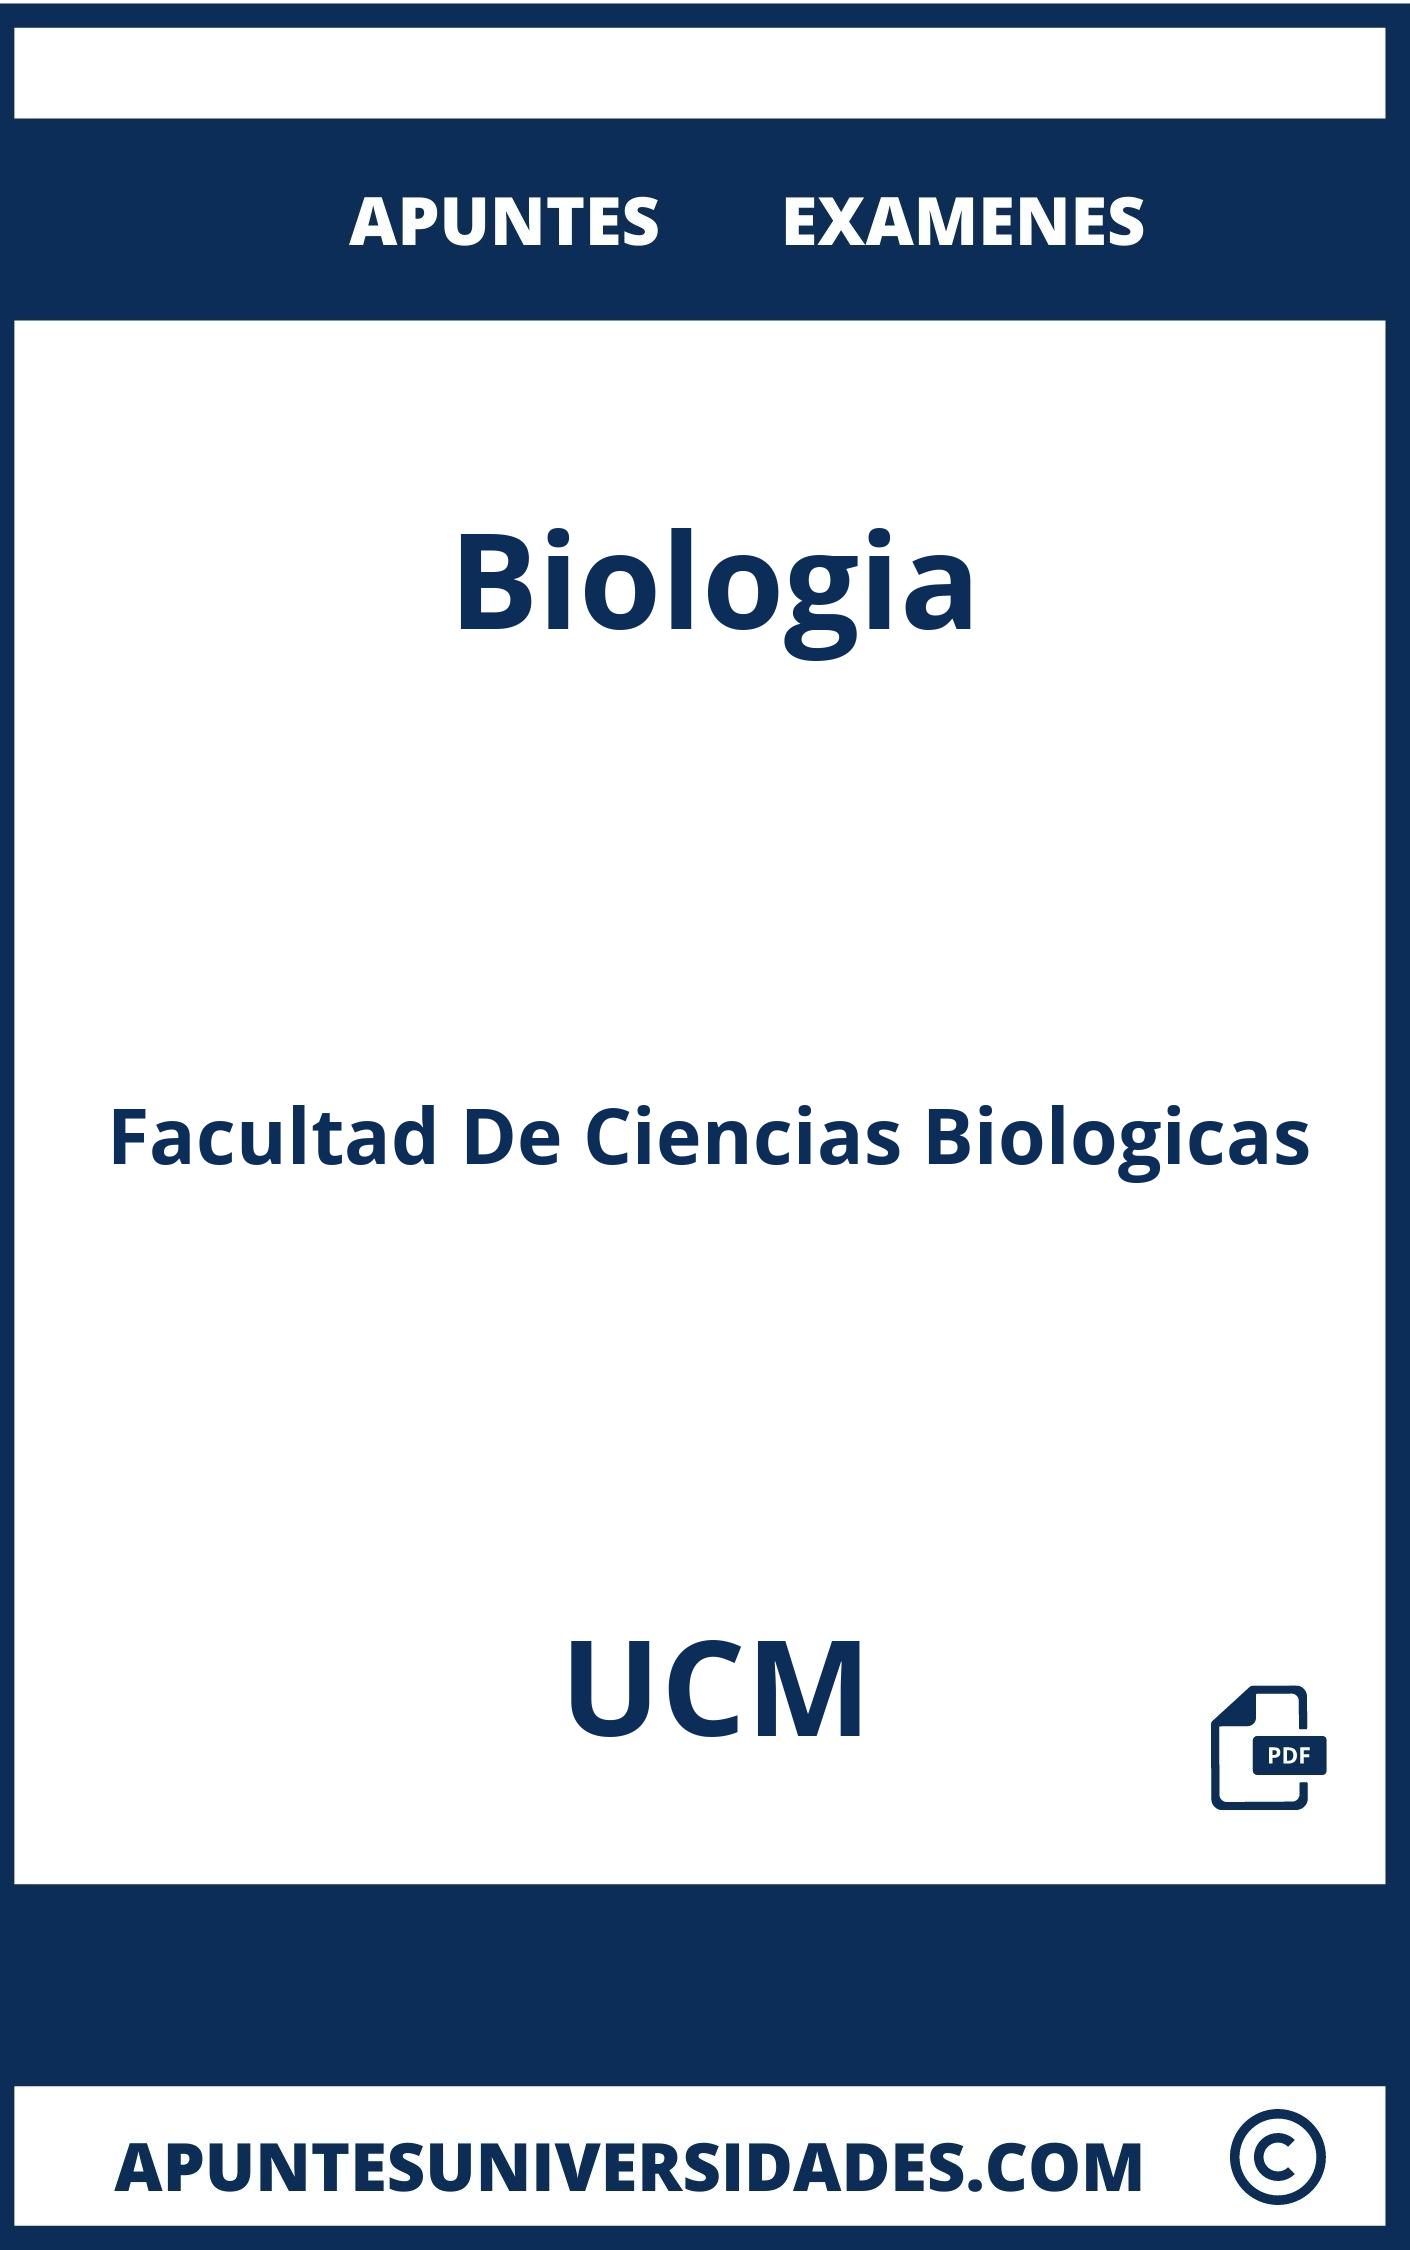 Examenes y Apuntes de Biologia UCM